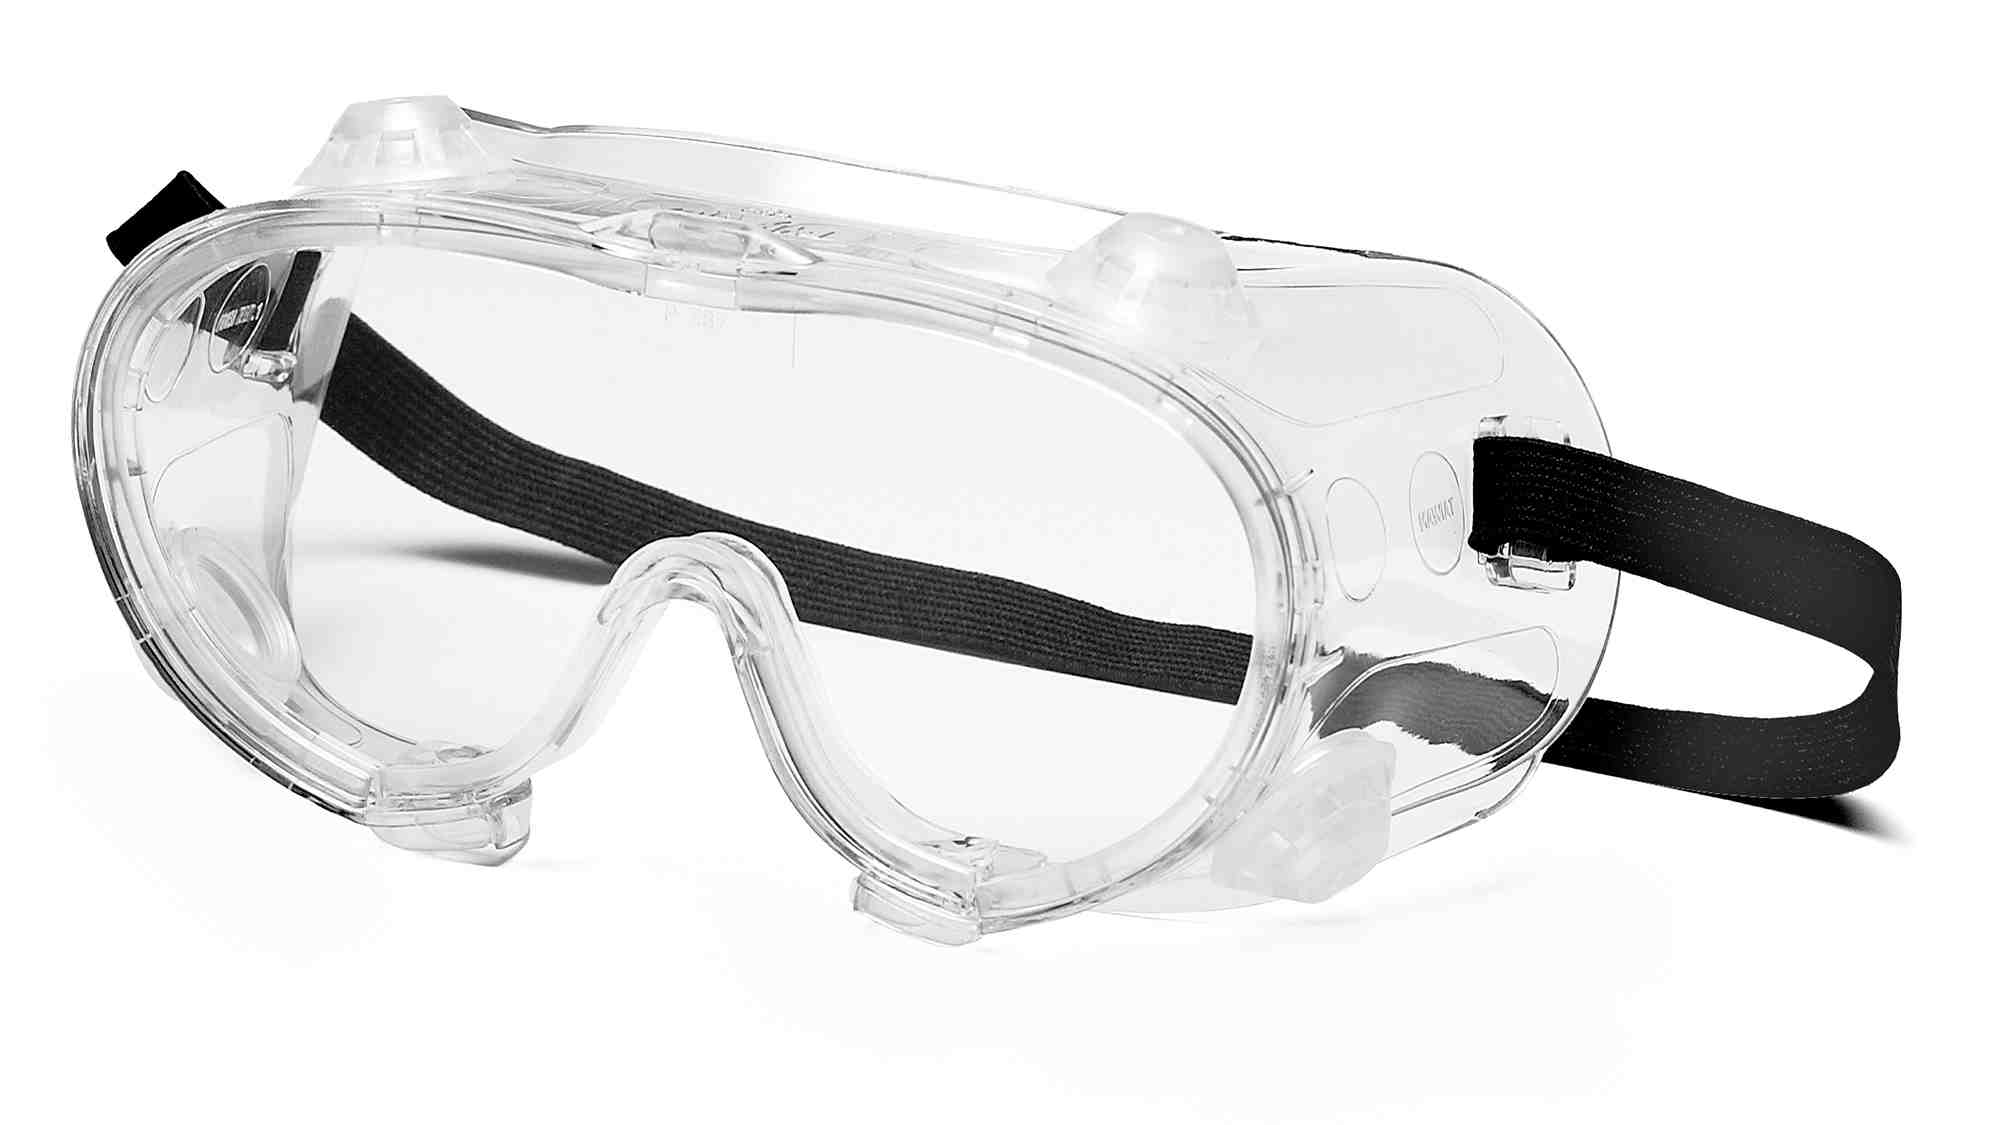 Специальные защитные очки. ANSI Z87.1 очки. Очки защитные g-07-130 Clear. Очки газосварщика ANSI Z87.1. Очки газосварщика Ампаро премиум (222503).